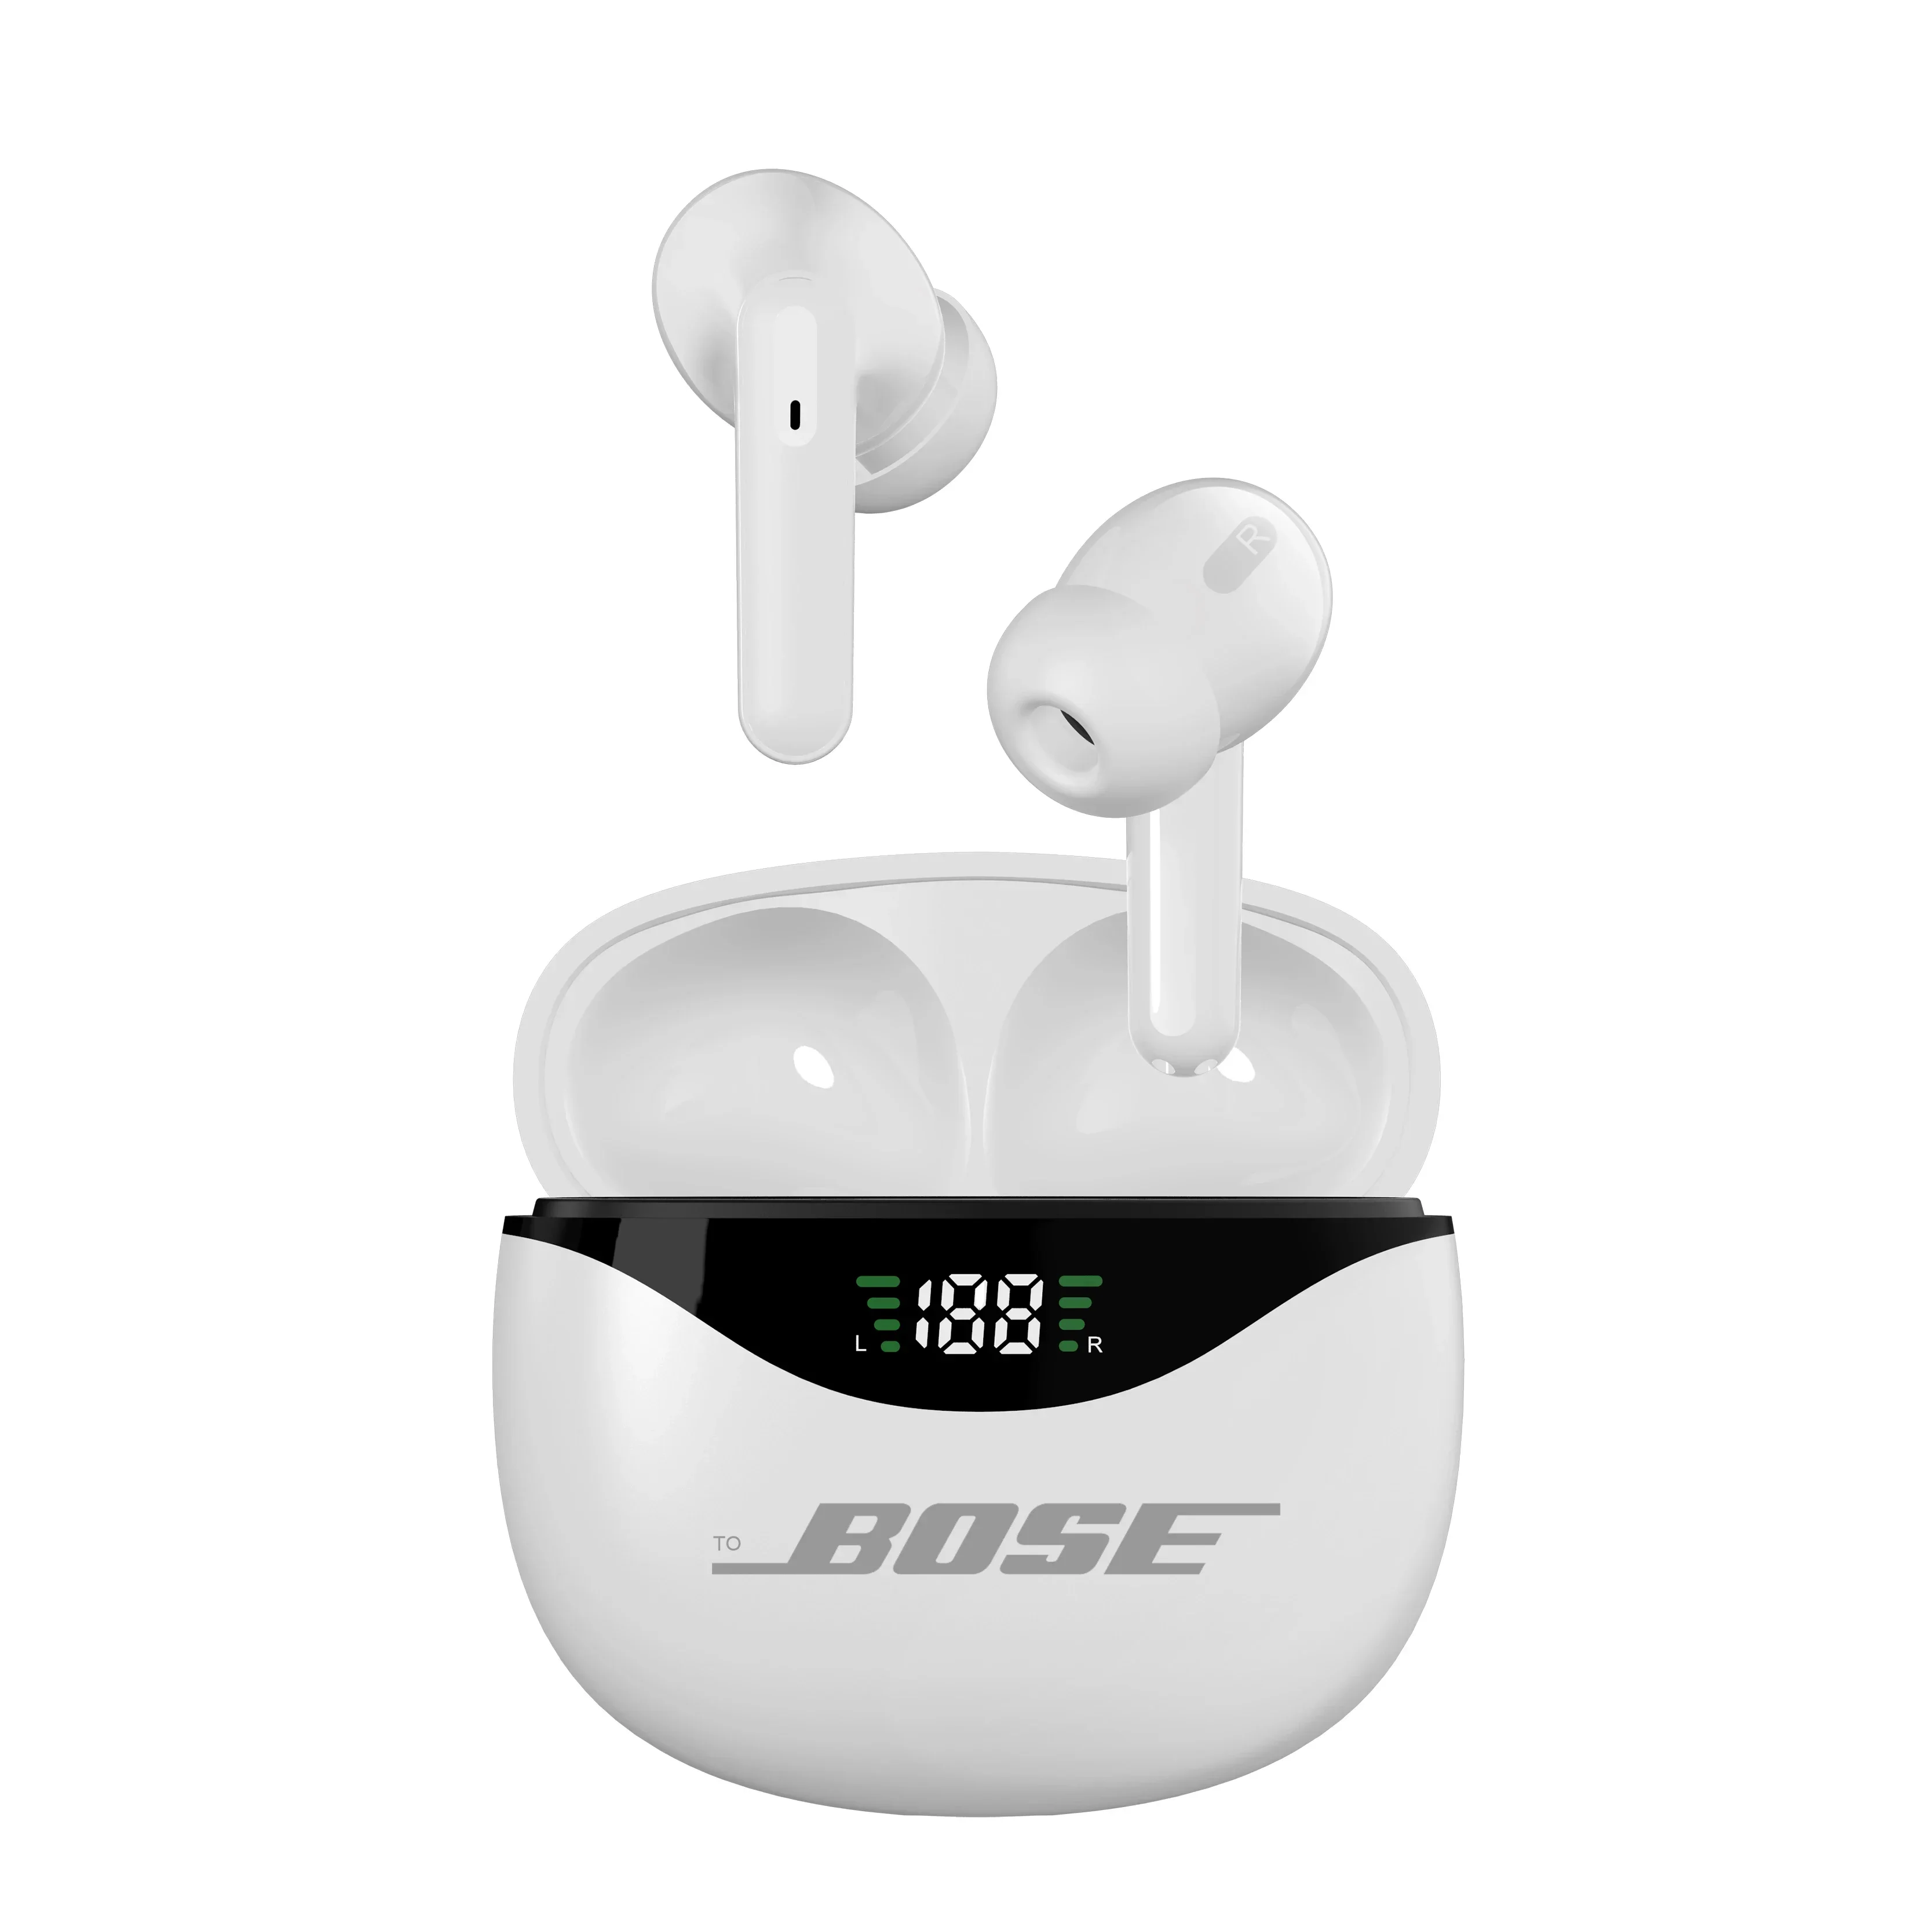 Originale per auricolari Bluetooth toBOSE cuffie sportive TWS auricolari Wireless cuffie con microfono Dual HD Display a LED auricolari da gioco